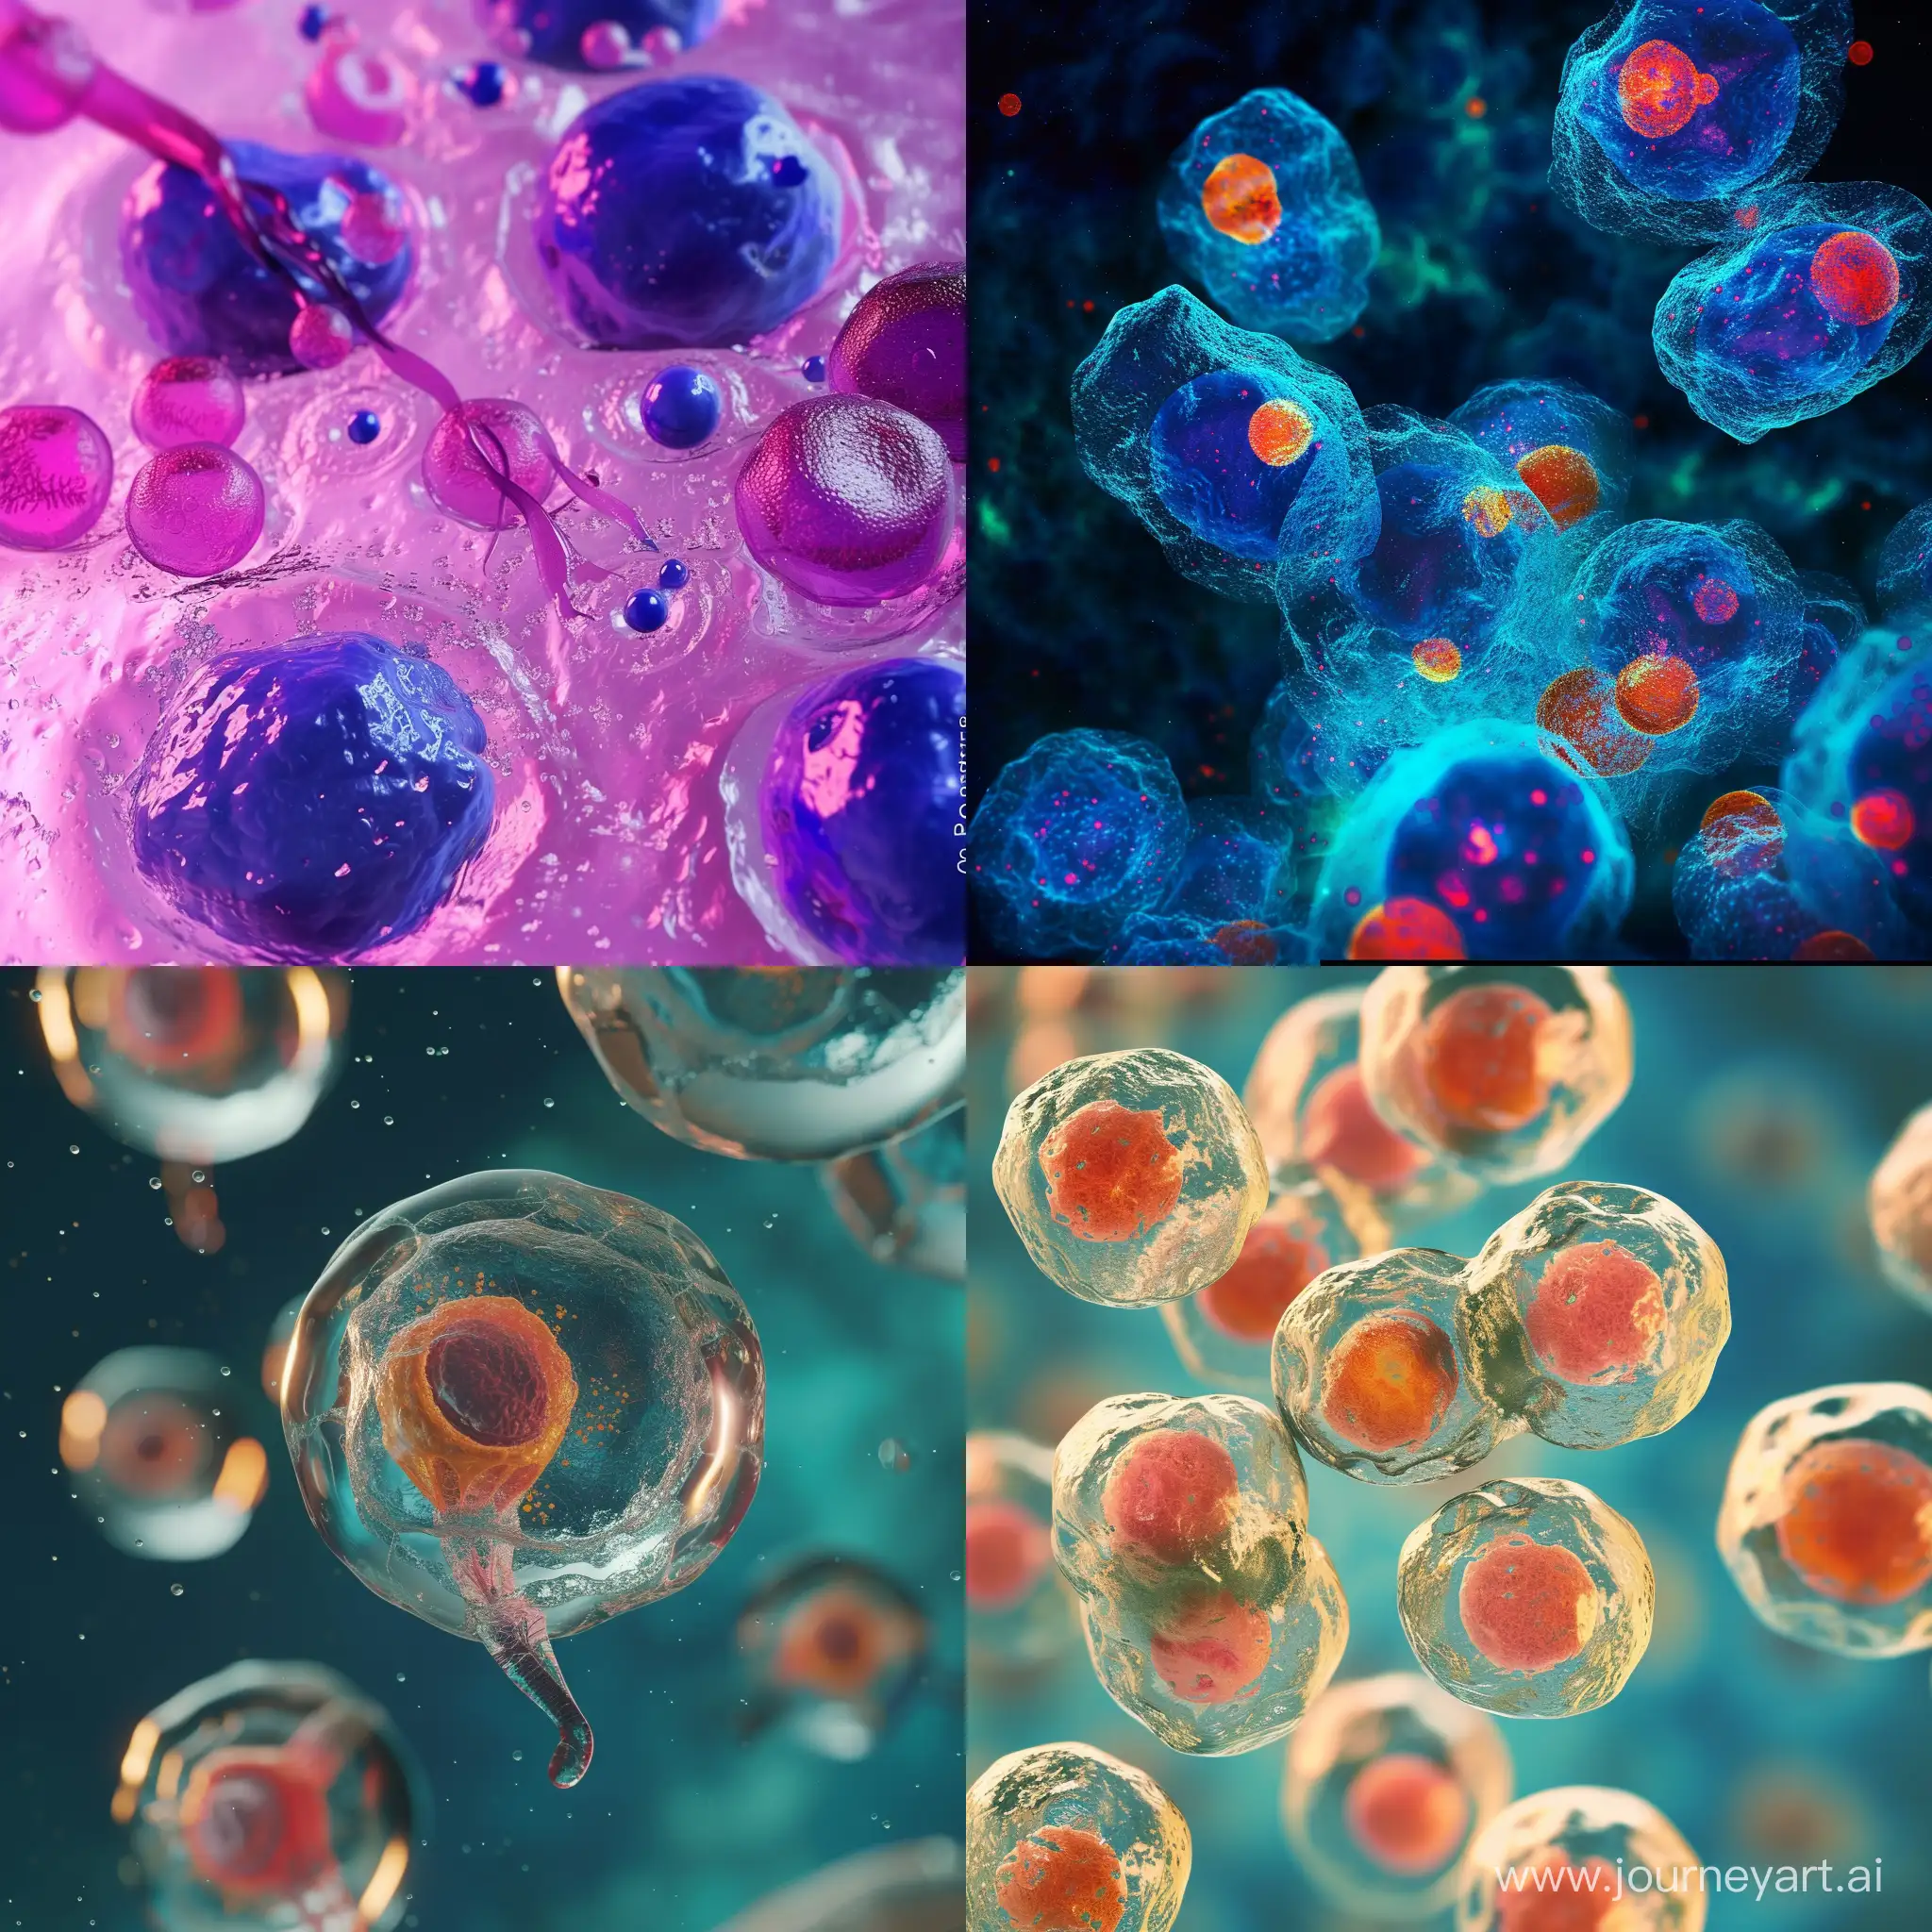 تصویری  که به وسیله آن‌ها می‌توانید به پیشرفت‌های تکنولوژی در حوزه سلول‌های بنیادی اشاره کنید؛ مانند توسعه روش‌های نوین پرداخت به سلول‌های بنیادی یا تولید انواع سلول‌های بنیادی به منظور درمان بیماری‌ها.